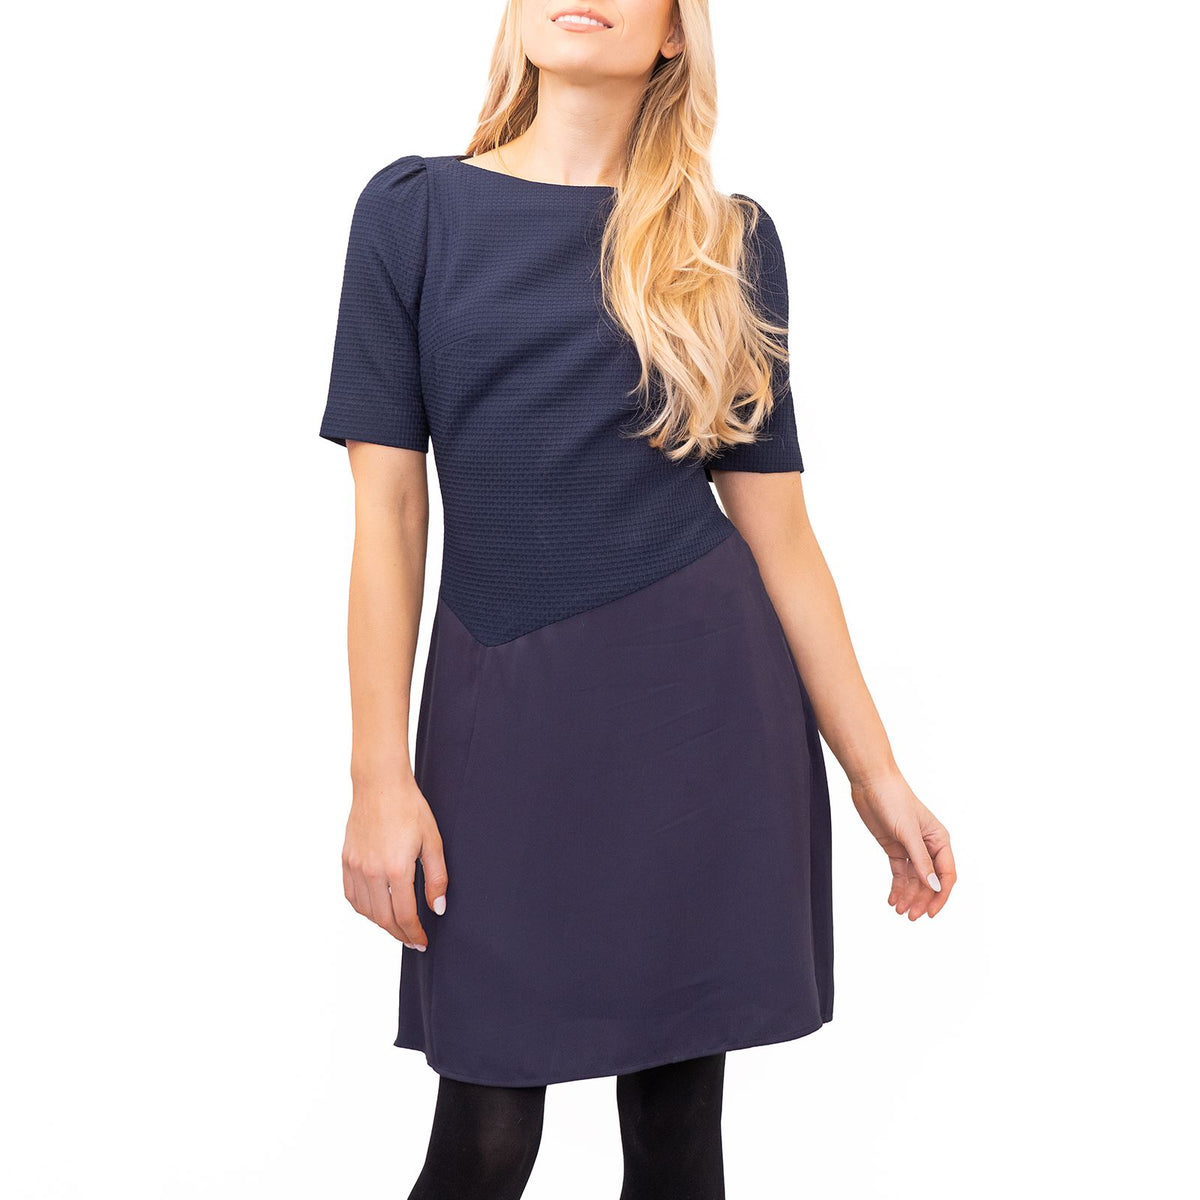 Reiss Zila Navy Textured Jersey Short Dress – Quality Brands Outlet